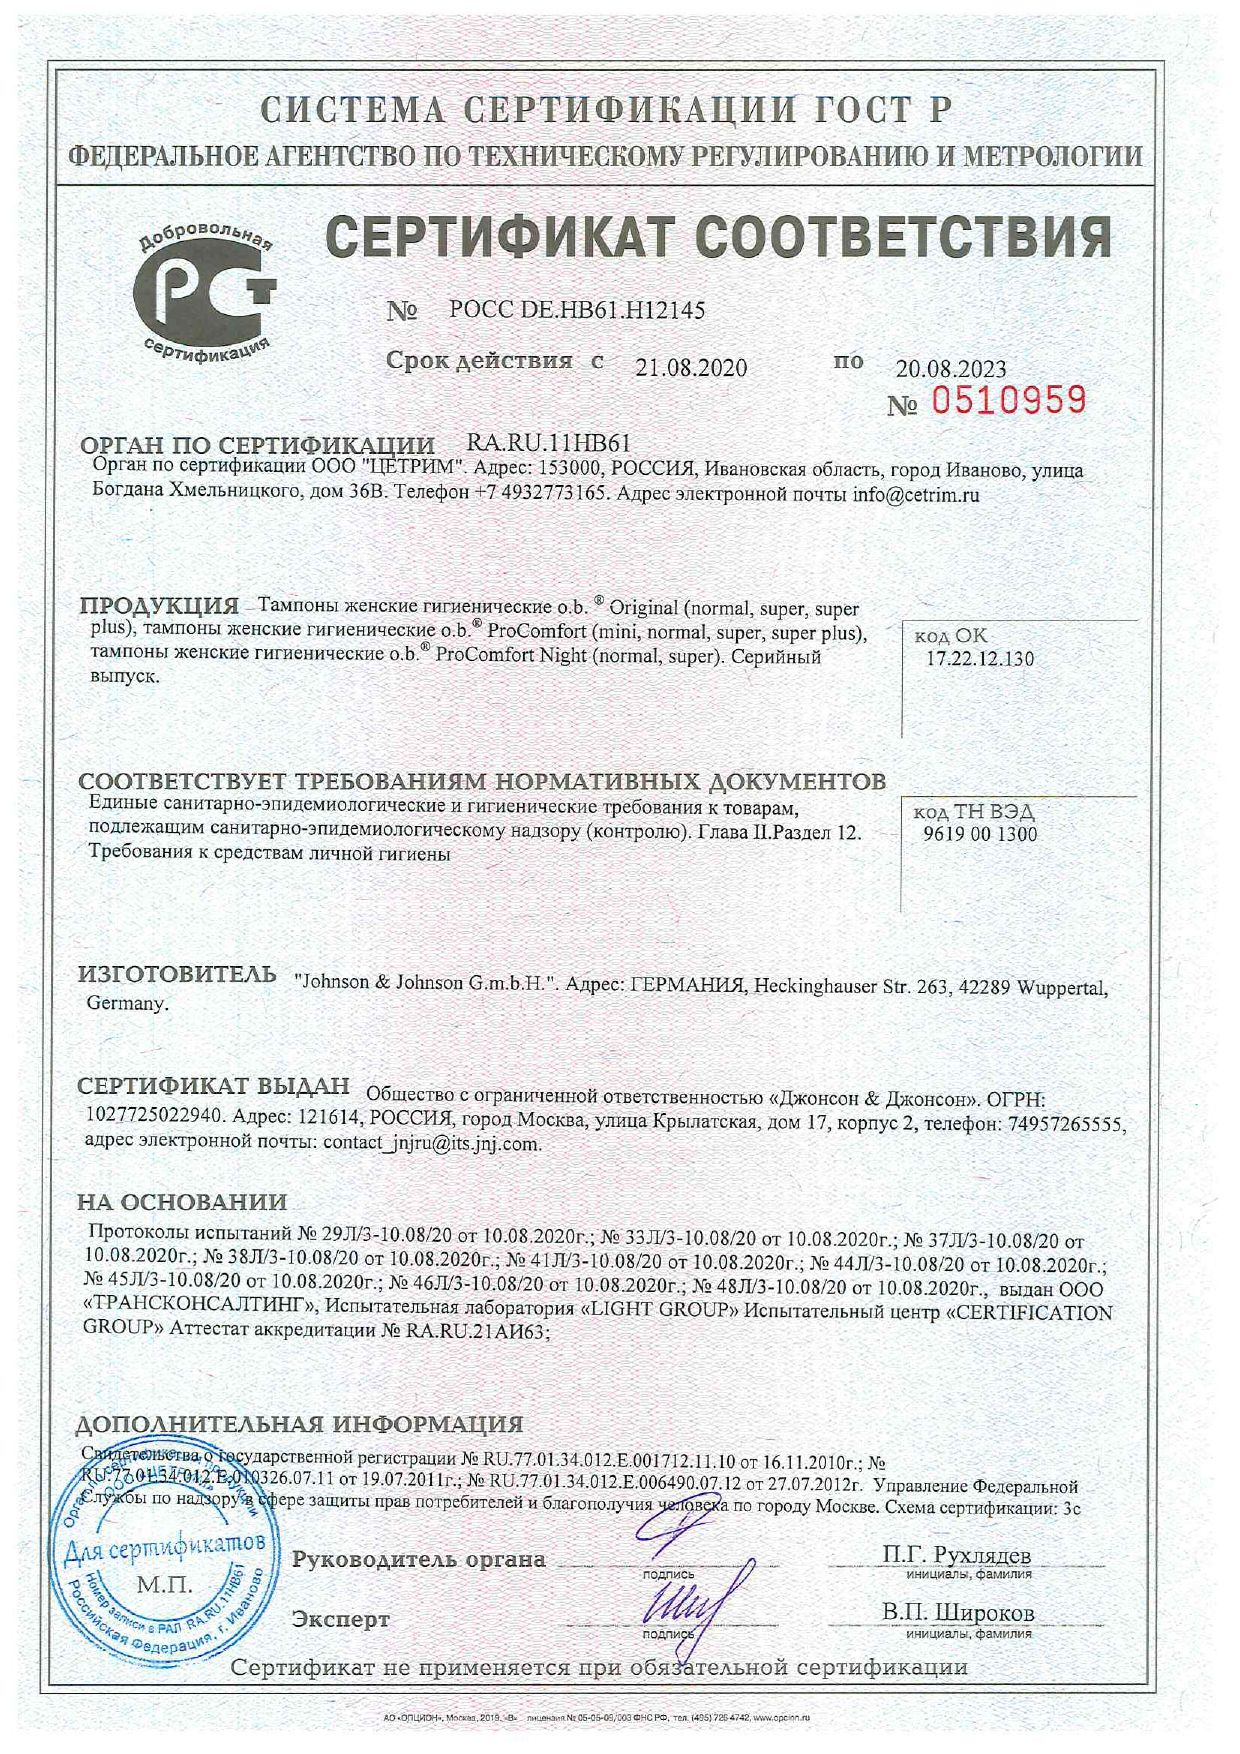 o.b. original normal тампоны женские гигиенические сертификат